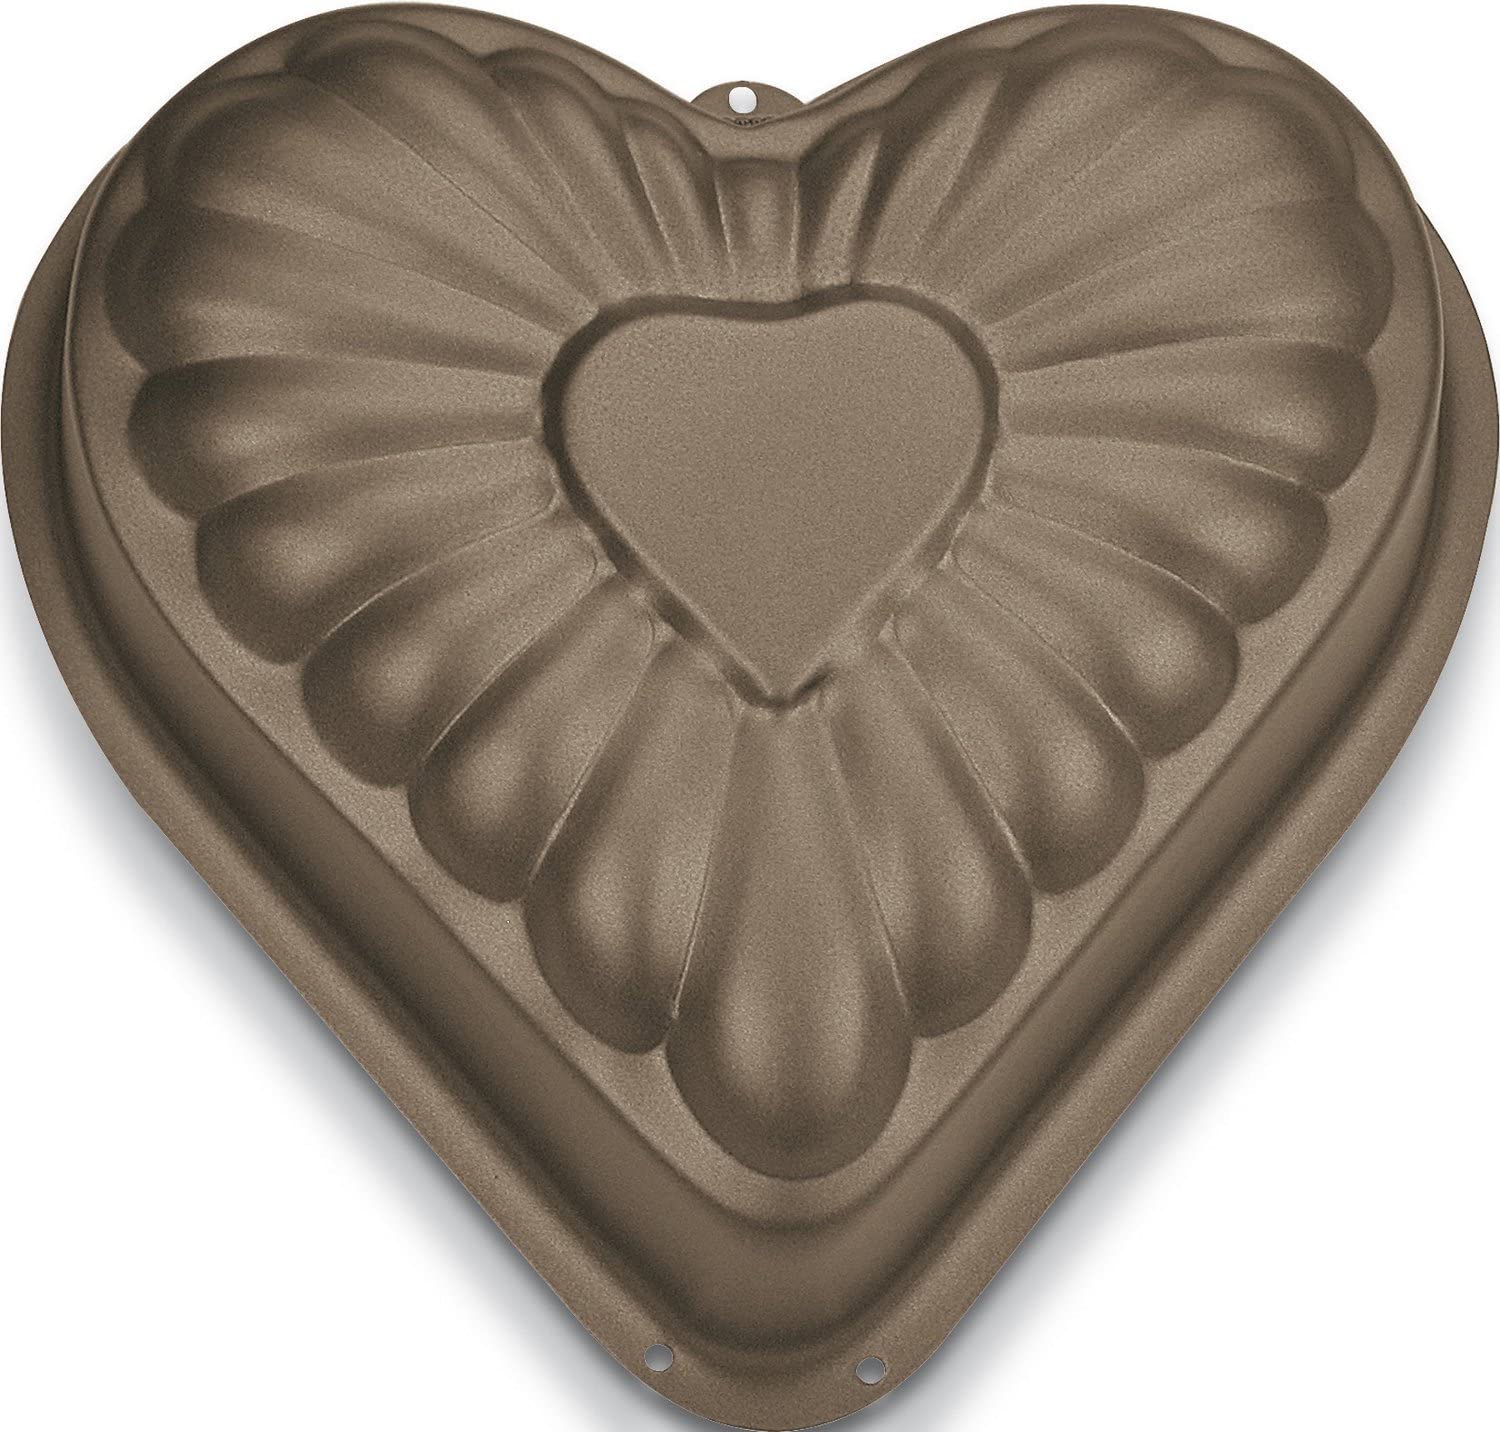 Staedter Städter 515079 Baking Mould Heart Set of 2 10 cm